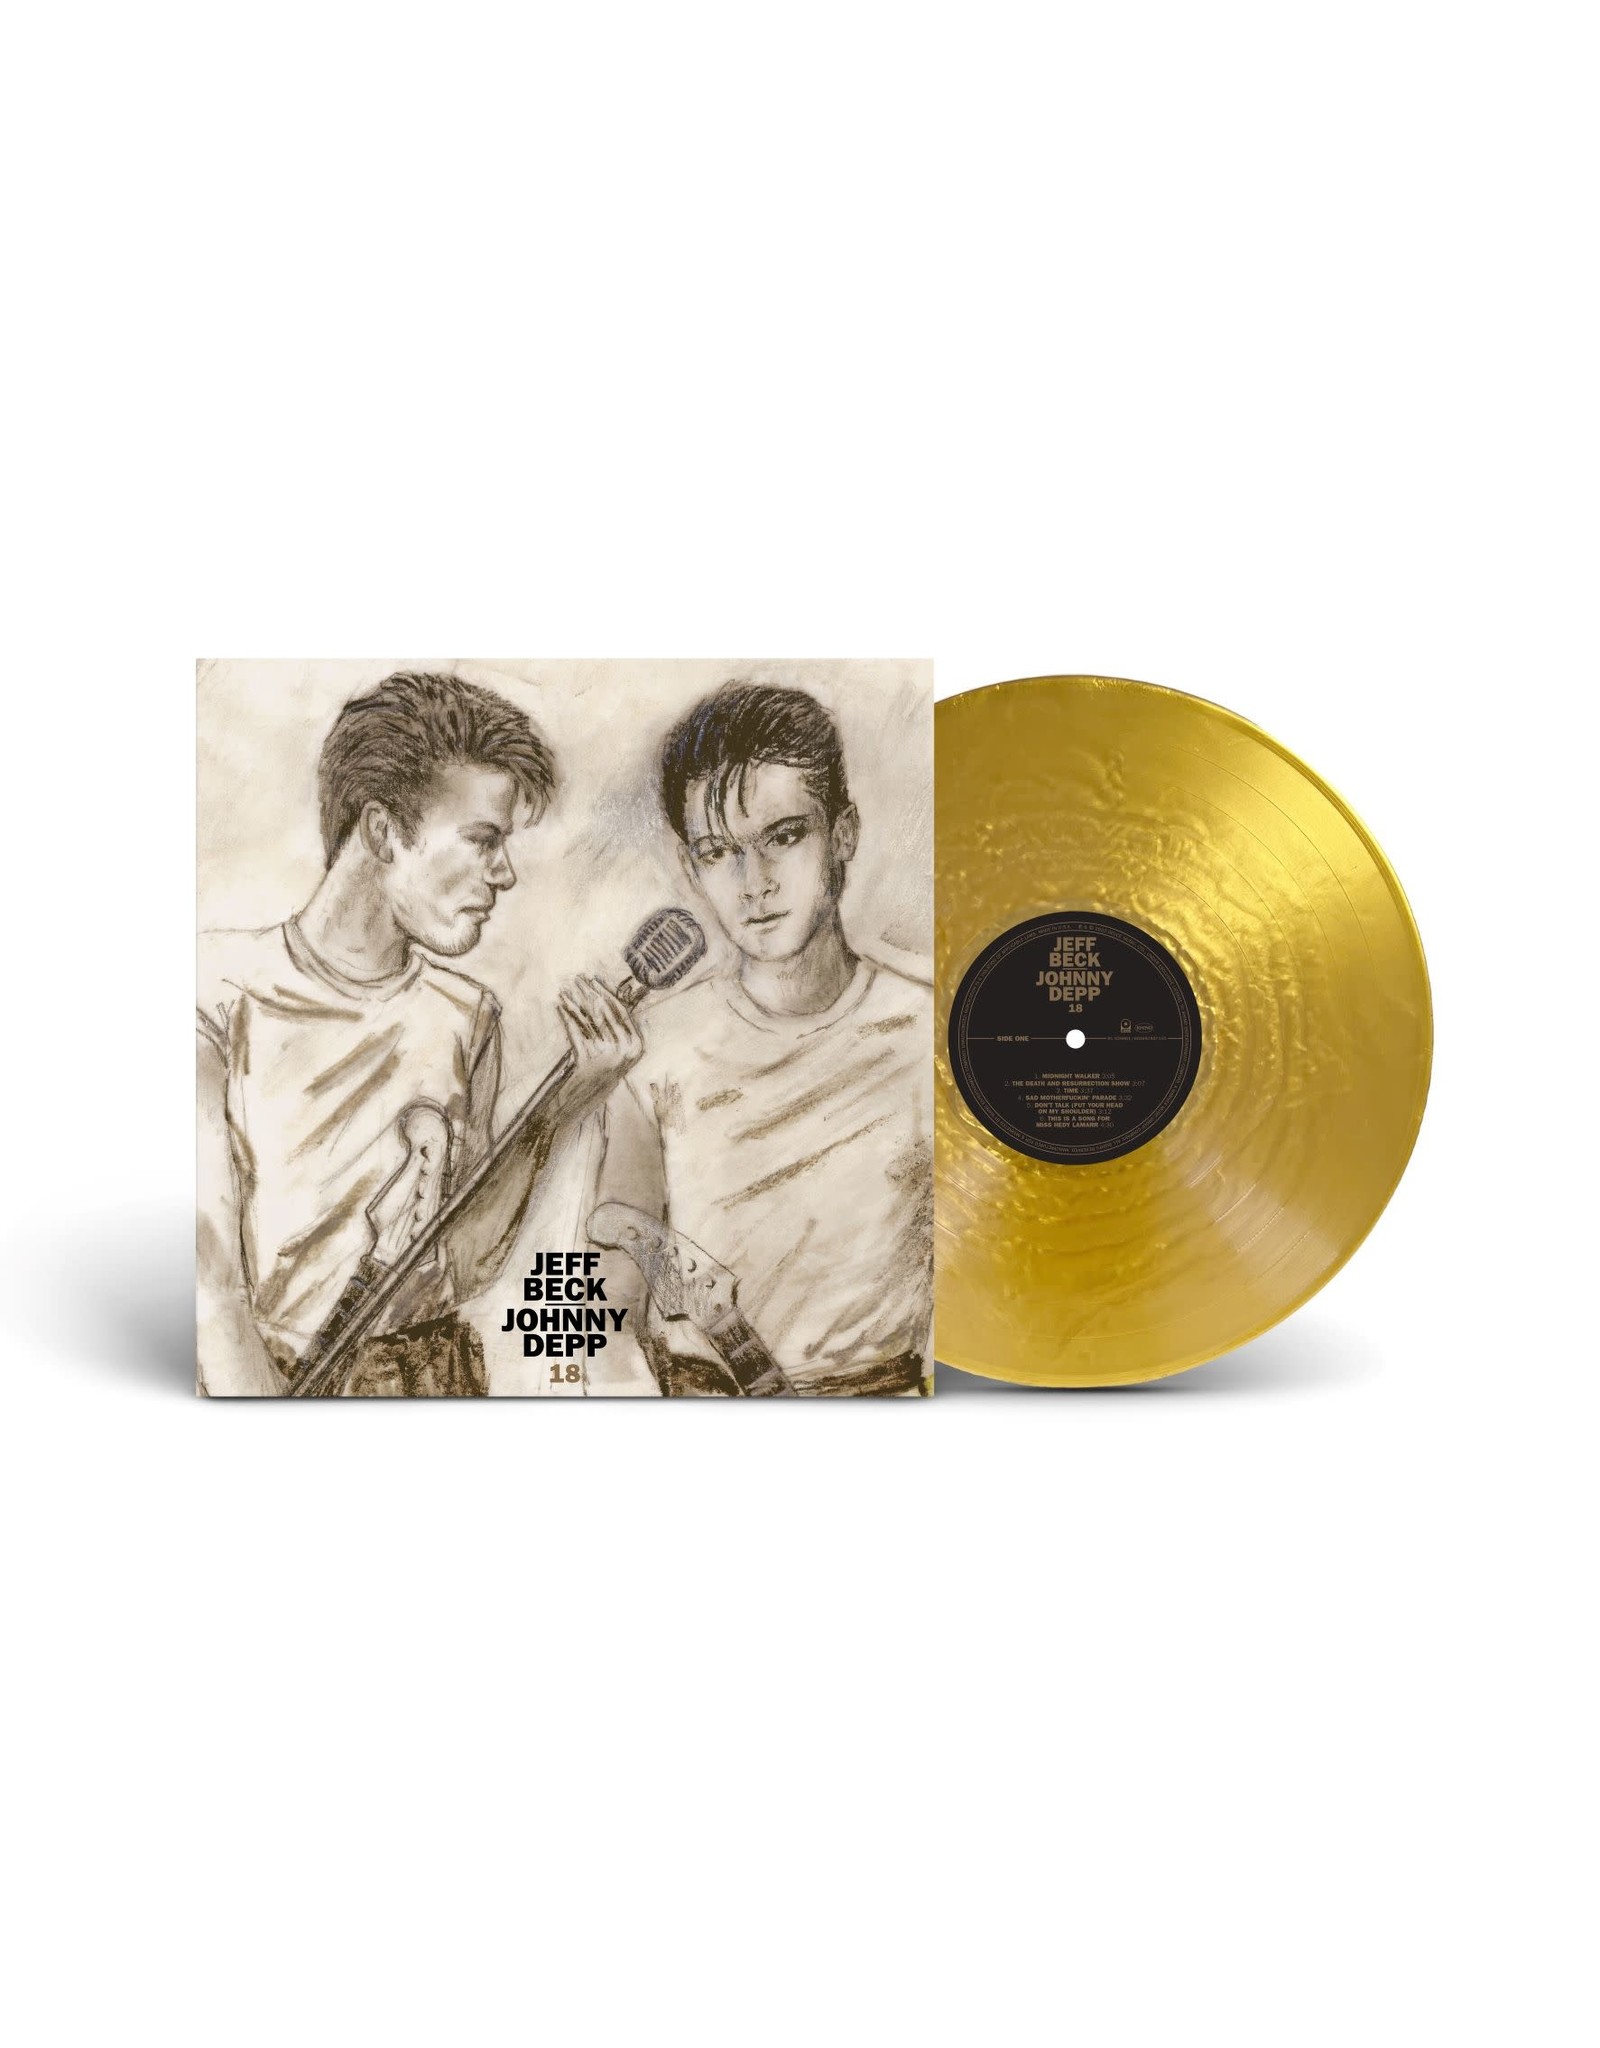 Jeff Beck & Johnny Depp - 18 (Exclusive Gold Vinyl)